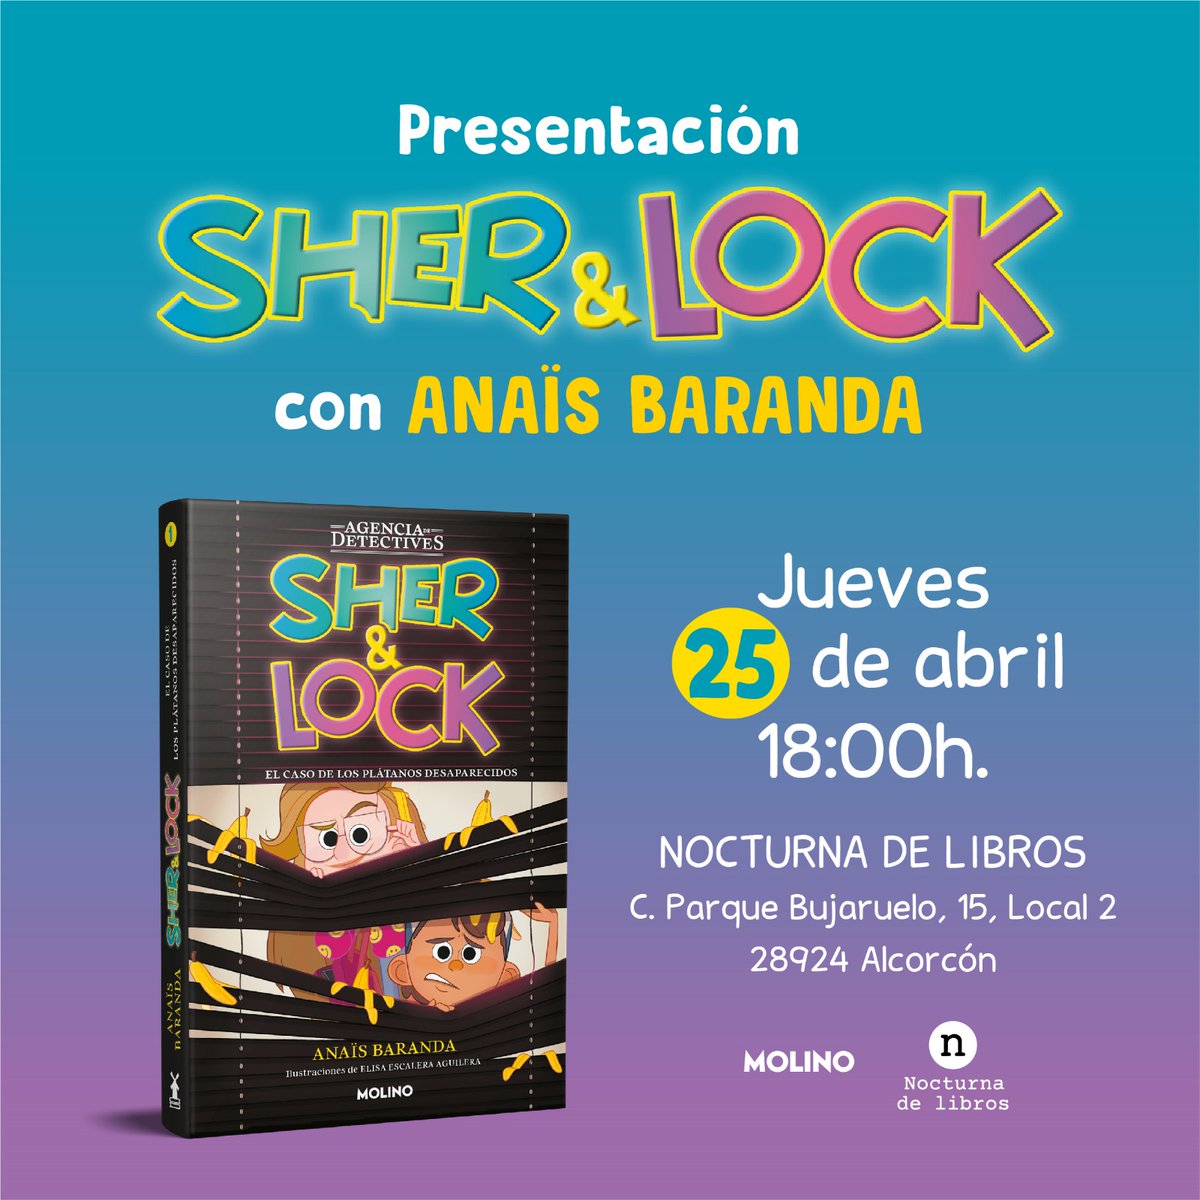 El 25 de abril vendrá a presentarnos su último libro 'Sher & lock' la mismísima @Anaisbarandab, una de las autoras más queridas de la literatura infantil y juvenil.
Entrada libre
nocturnadelibros.es

#nocturnadelibros #Alcorcón #somosbarrio #libreríaviva #librería